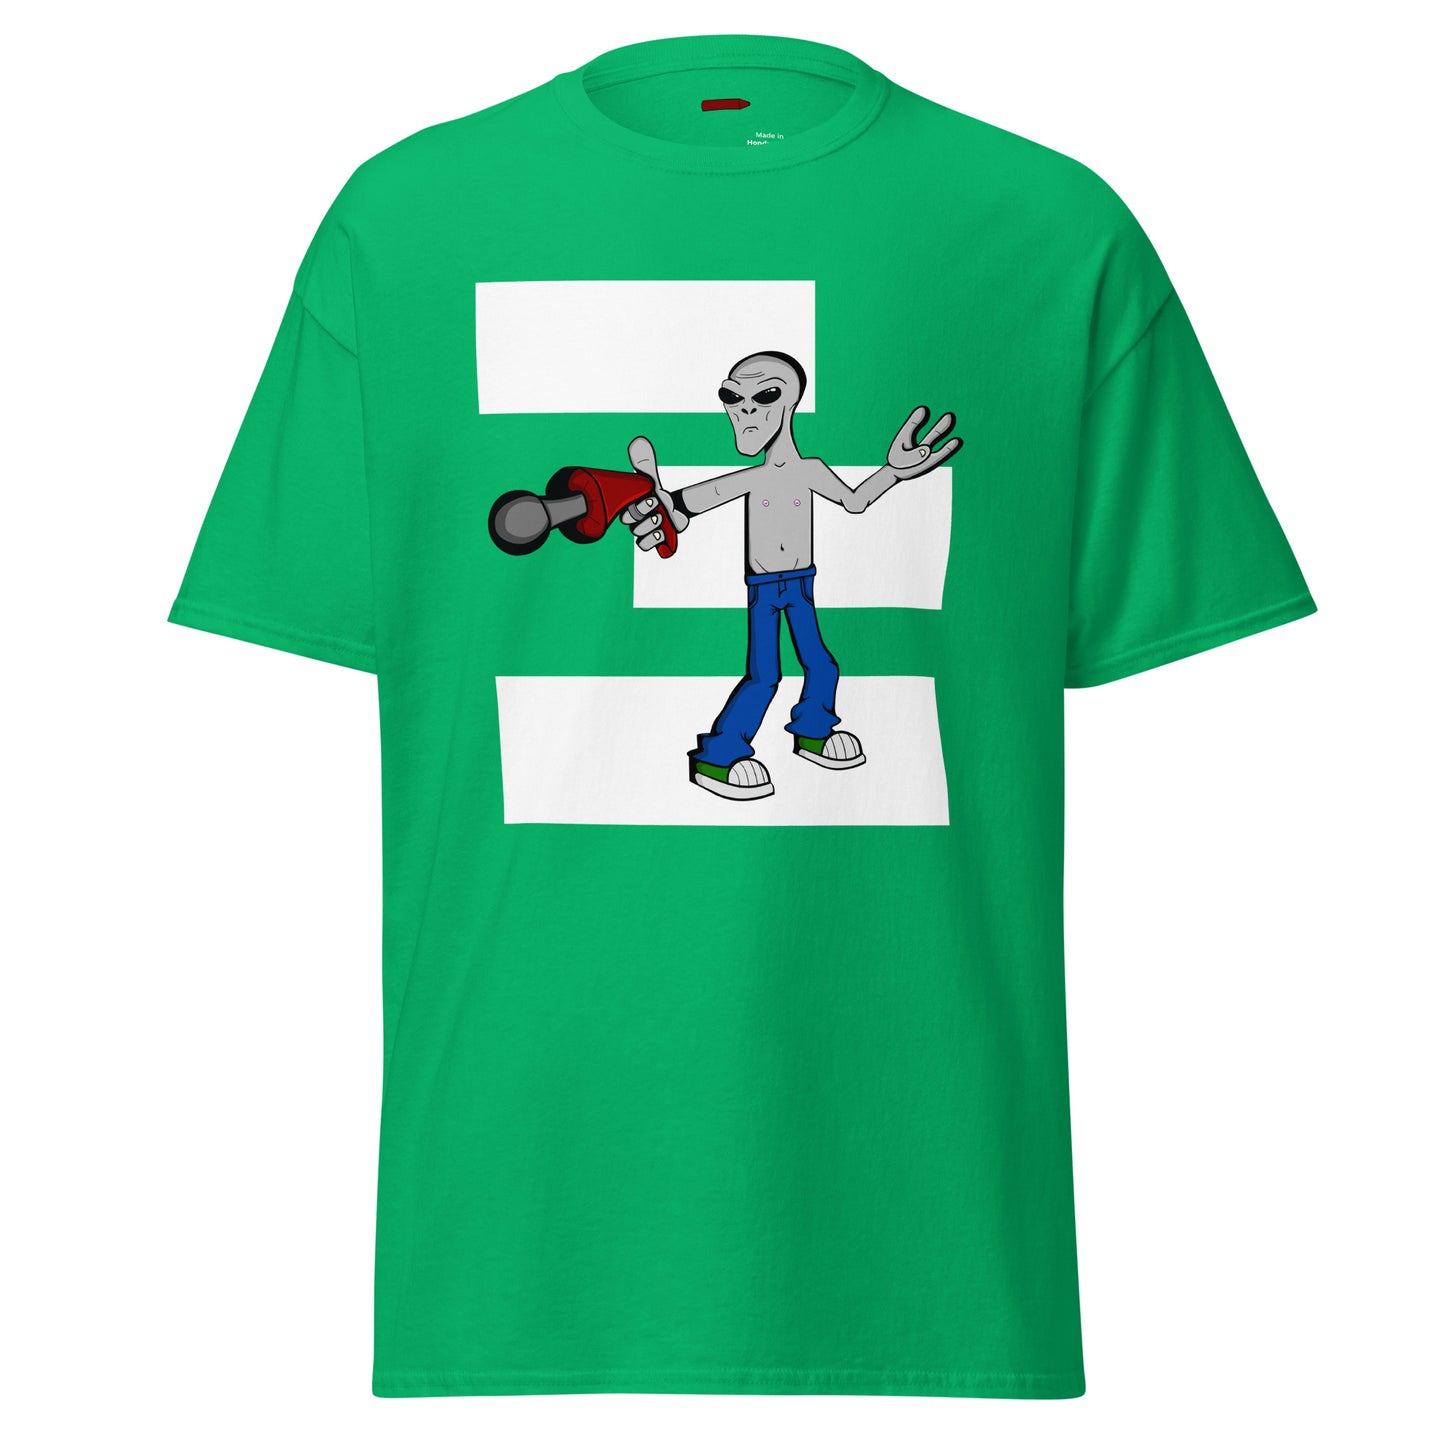 I believe - Men's T-Shirt